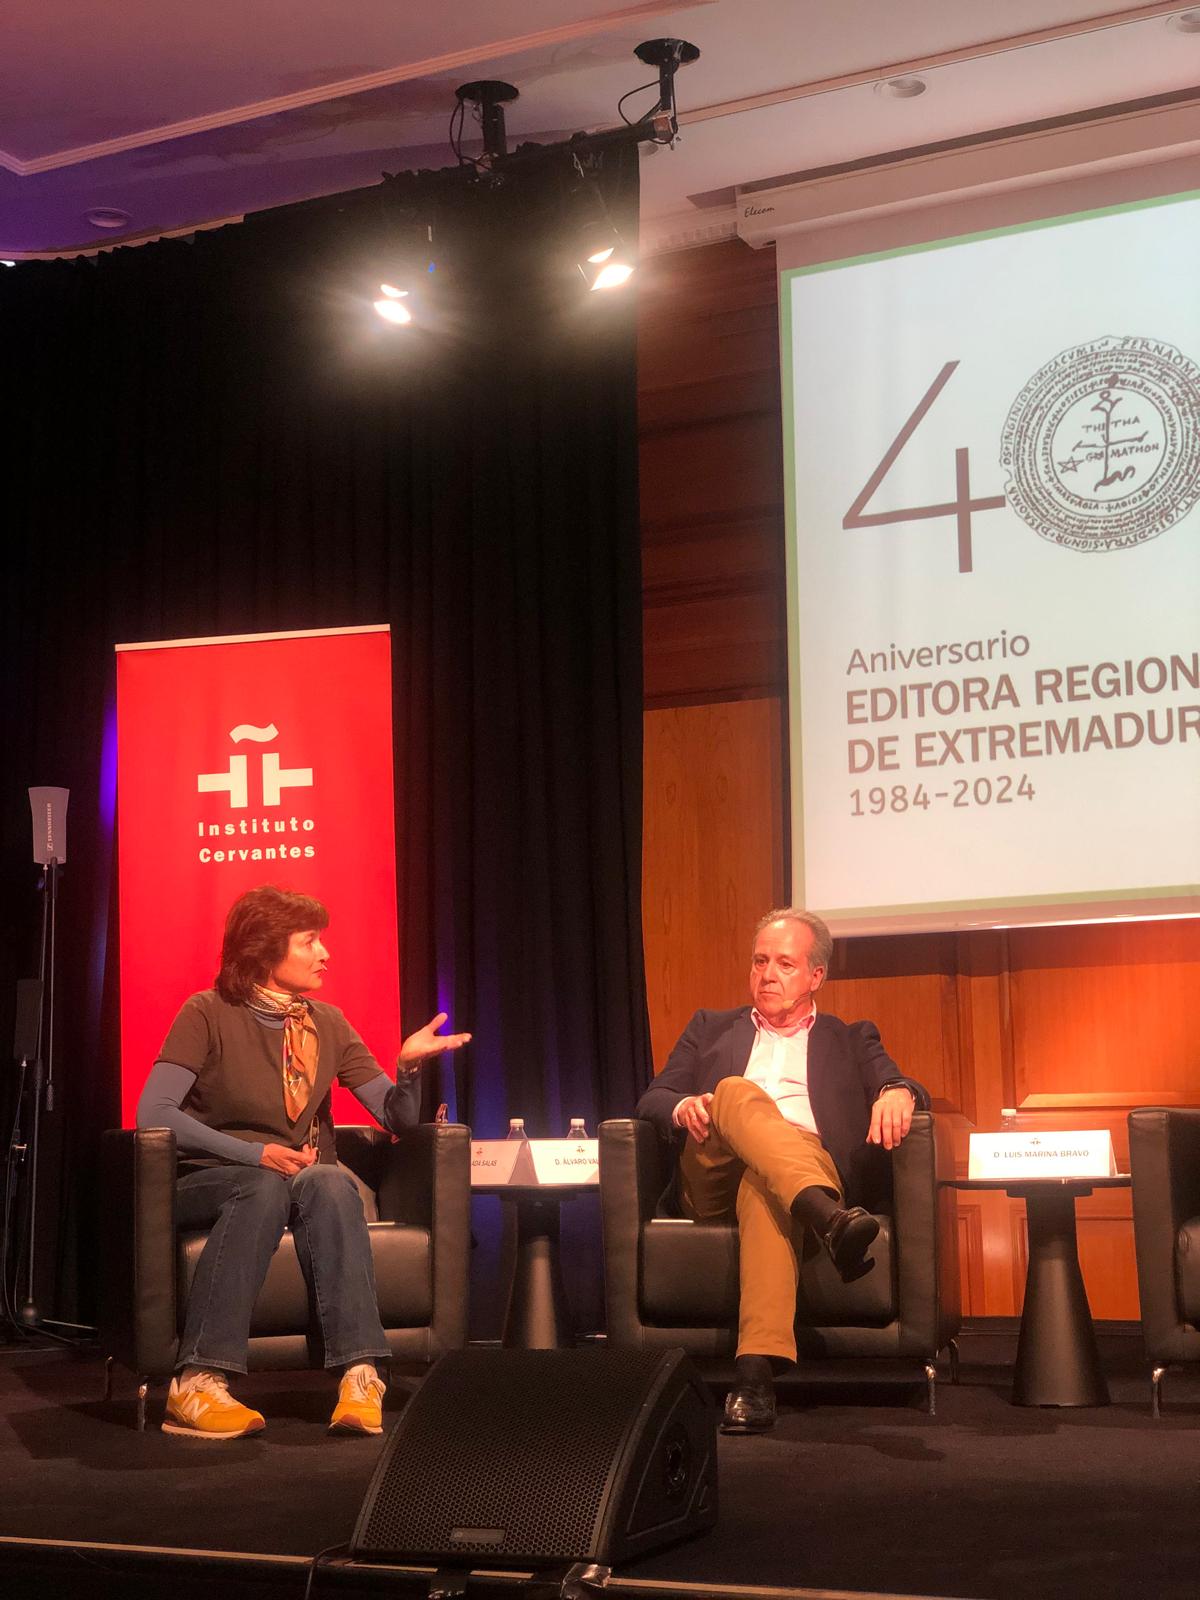 Image 3 of article La Editora Regional de Extremadura lleva las letras extremeñas al Instituto Cervantes de Madrid en su 40º aniversario